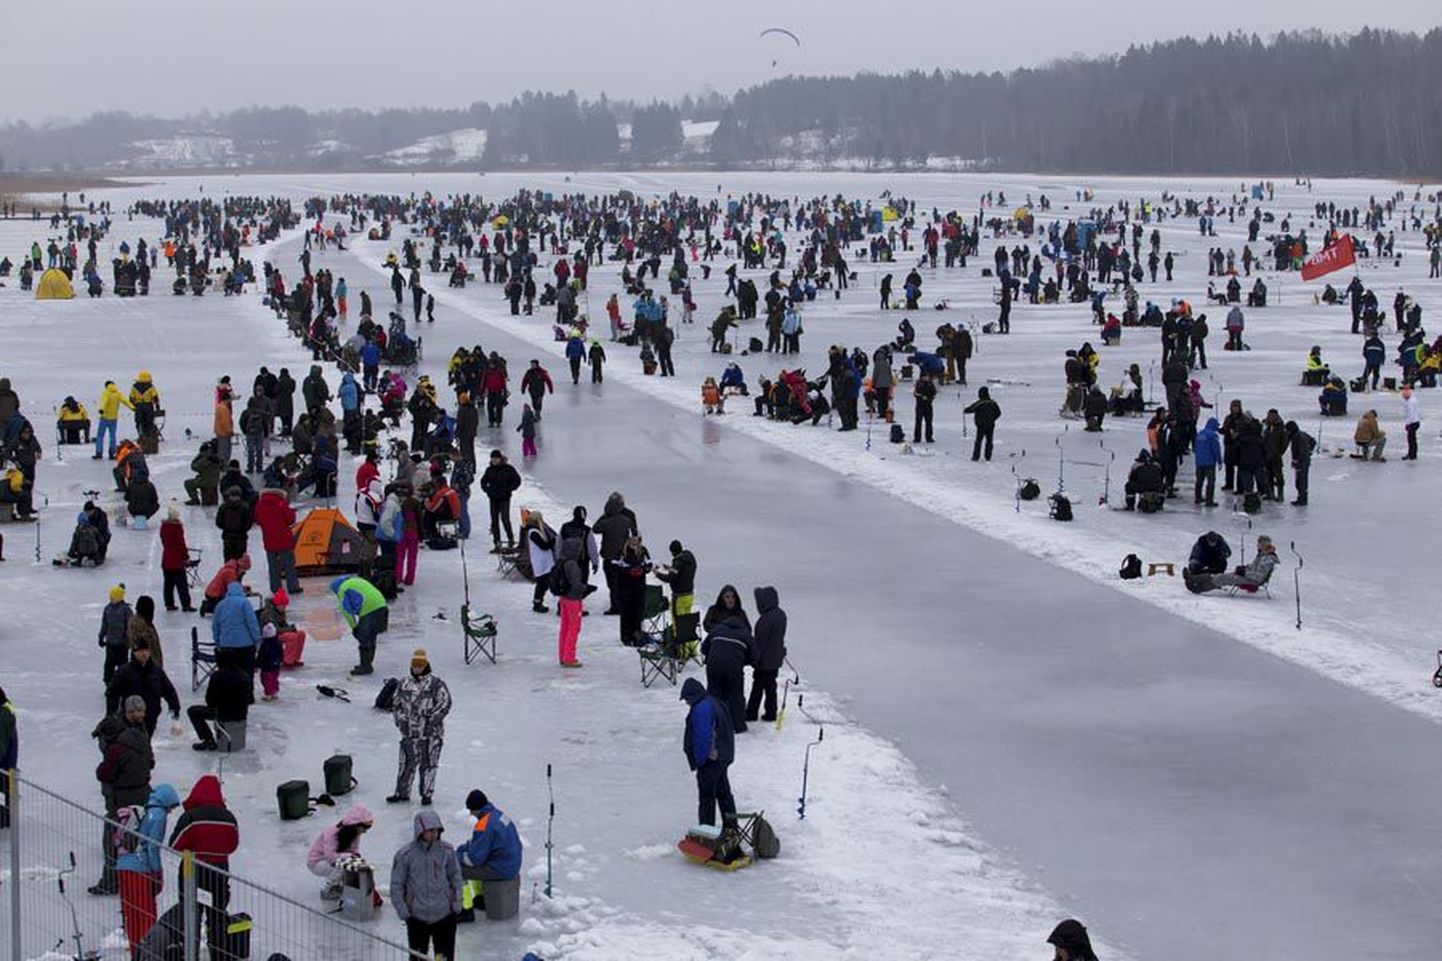 Eelmise aasta 14. veebruaril mustendas Viljandi järve jää neljandat korda talvise kalapüügivõistluse osavõtjatest. Tänavu seda erilist vaadet nautida ei saa.